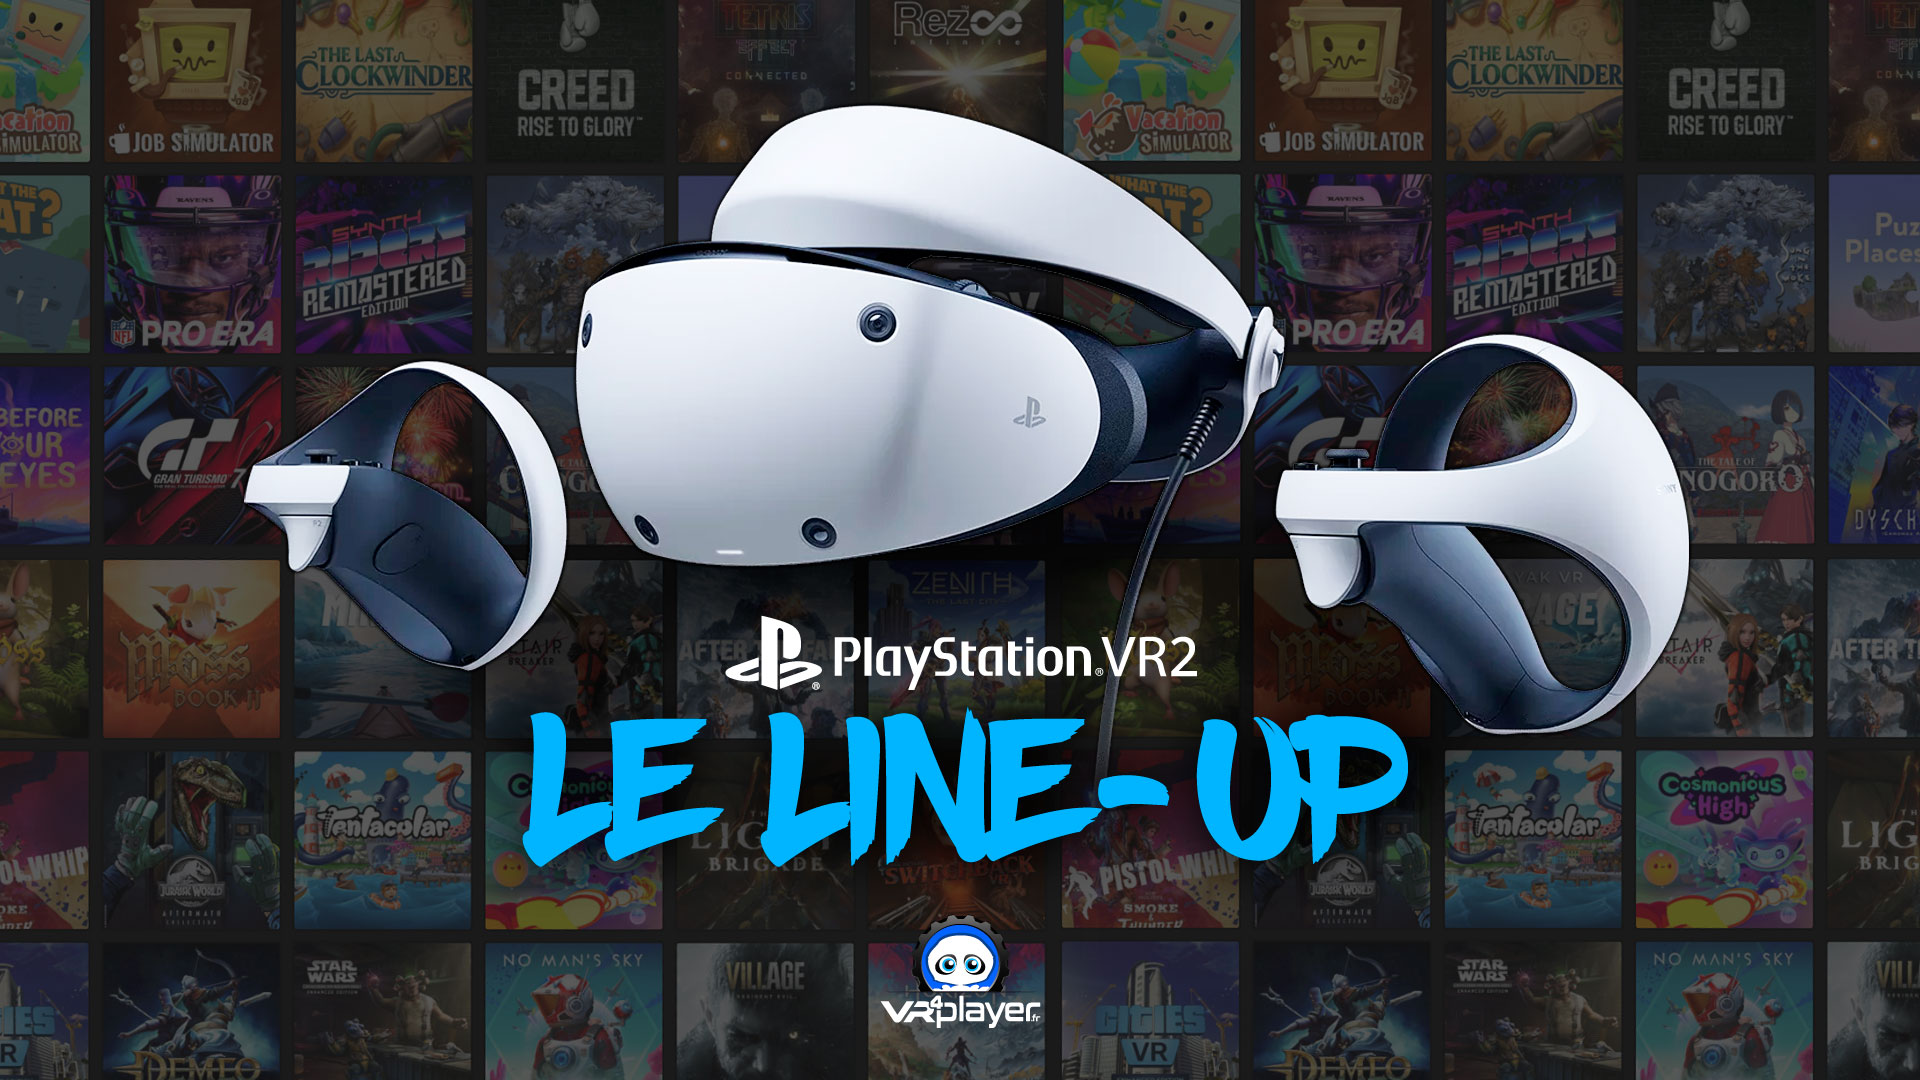 PlayStation VR 2 : le line-up de lancement agrandi avec 42 jeux en day one,  et 10 nouveaux titres confirmés pour le casque ! 